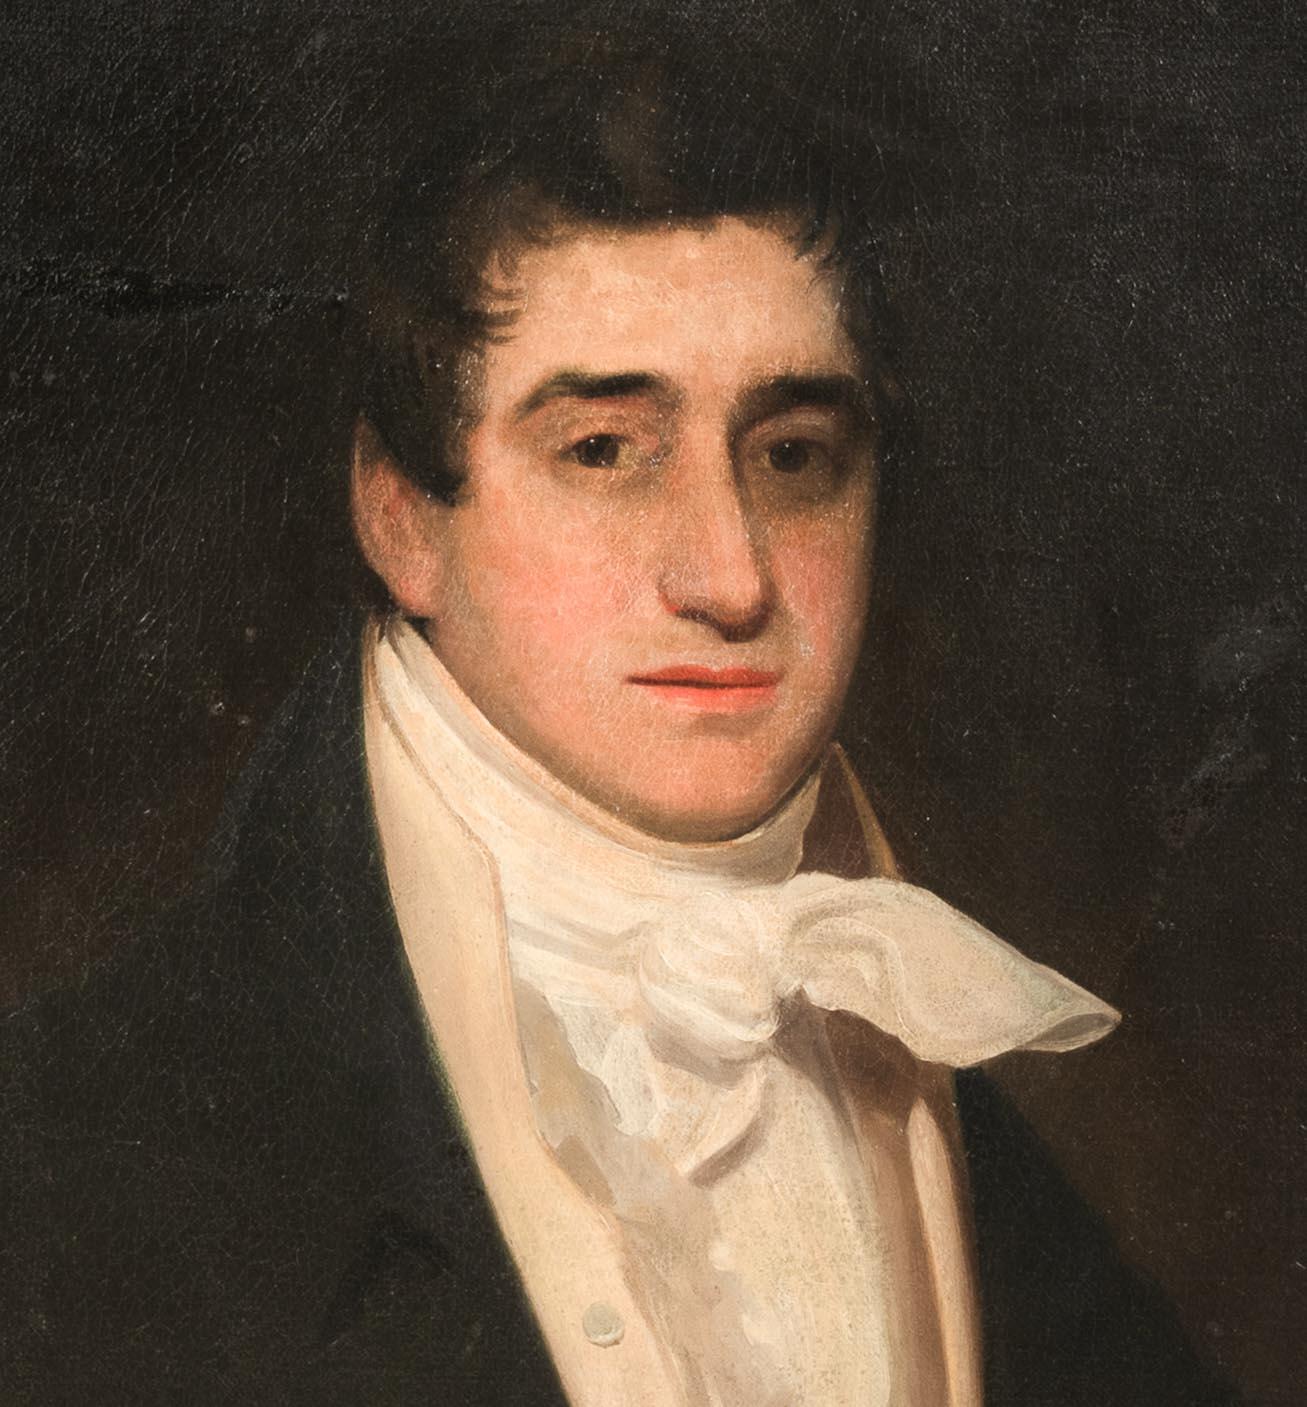 Portrait of Lord Napier - William John Napier (1786-1834)   For Sale 5